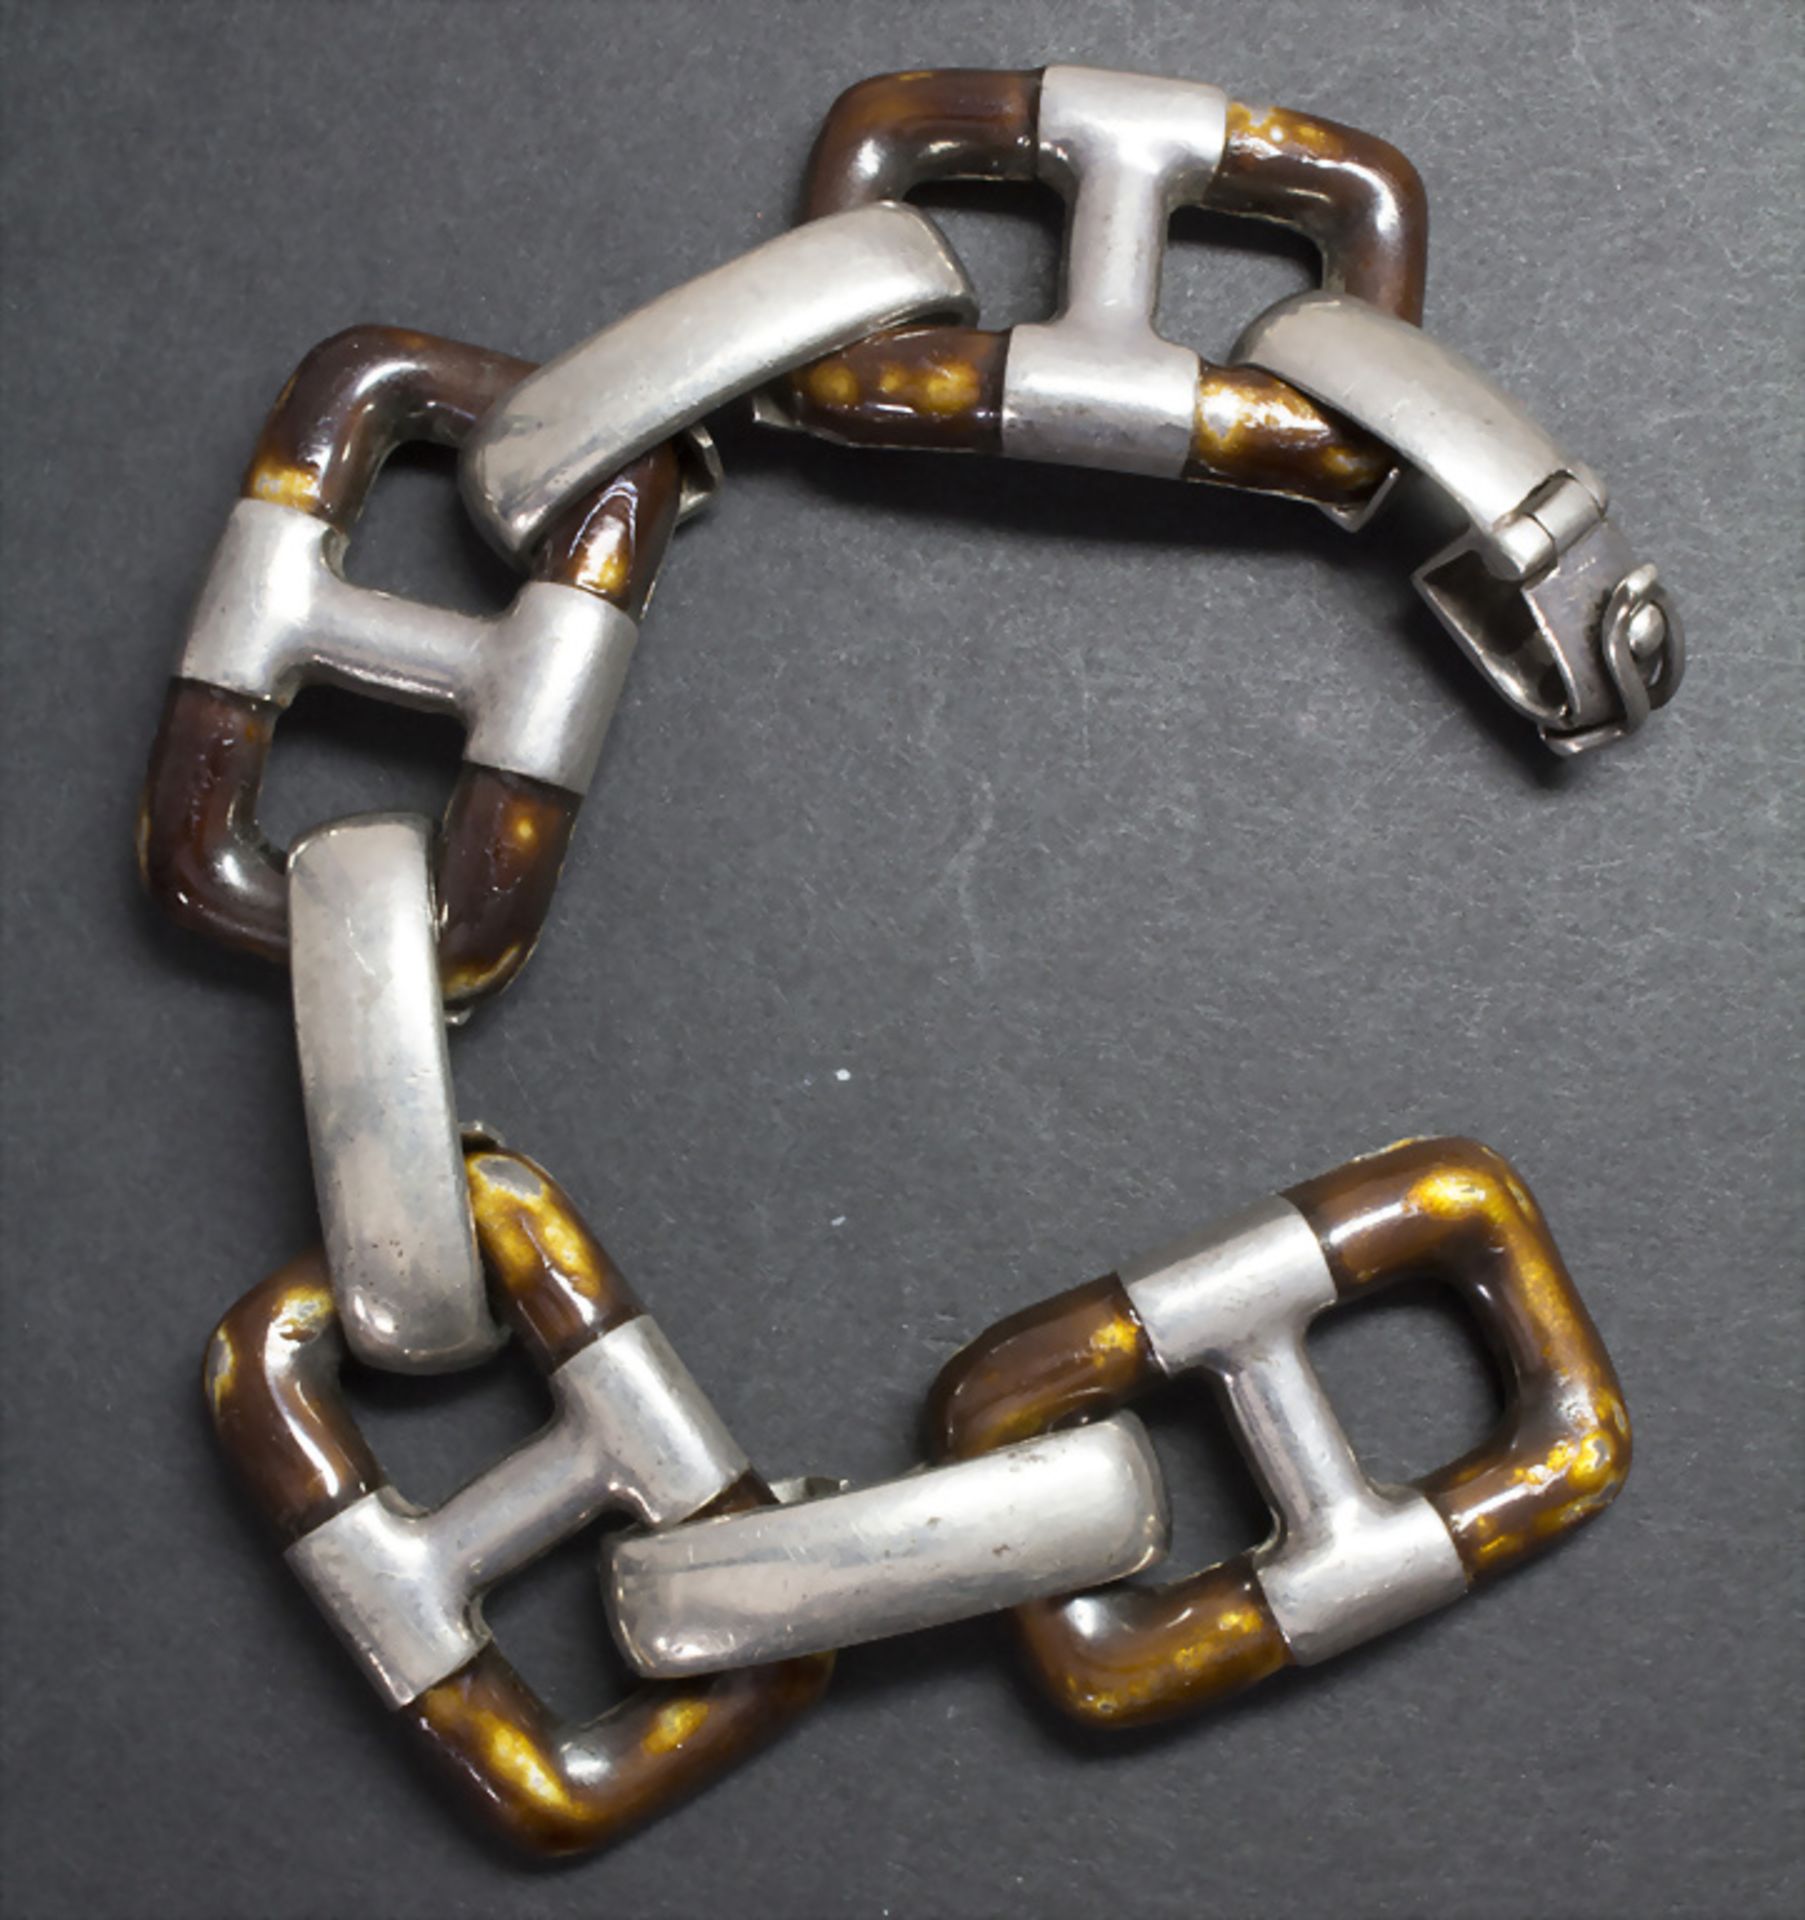 Designer Armband in Silber / A designer silver bracelet - Image 2 of 3